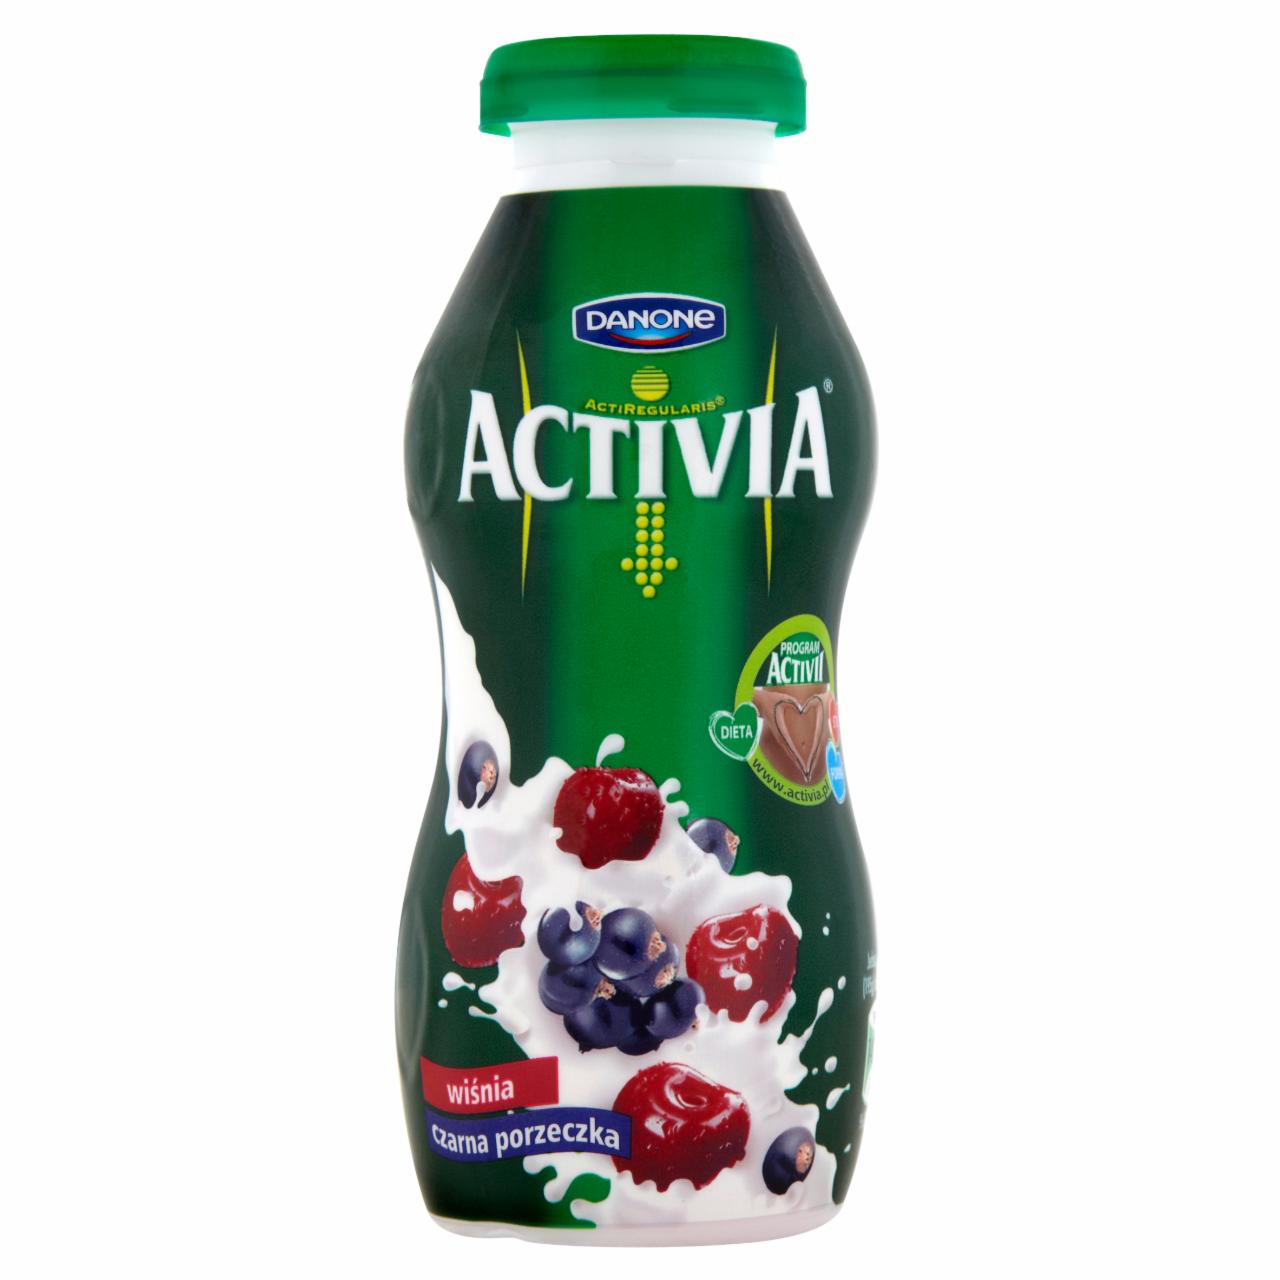 Zdjęcia - Danone Activia wiśnia czarna porzeczka Jogurt 195 g